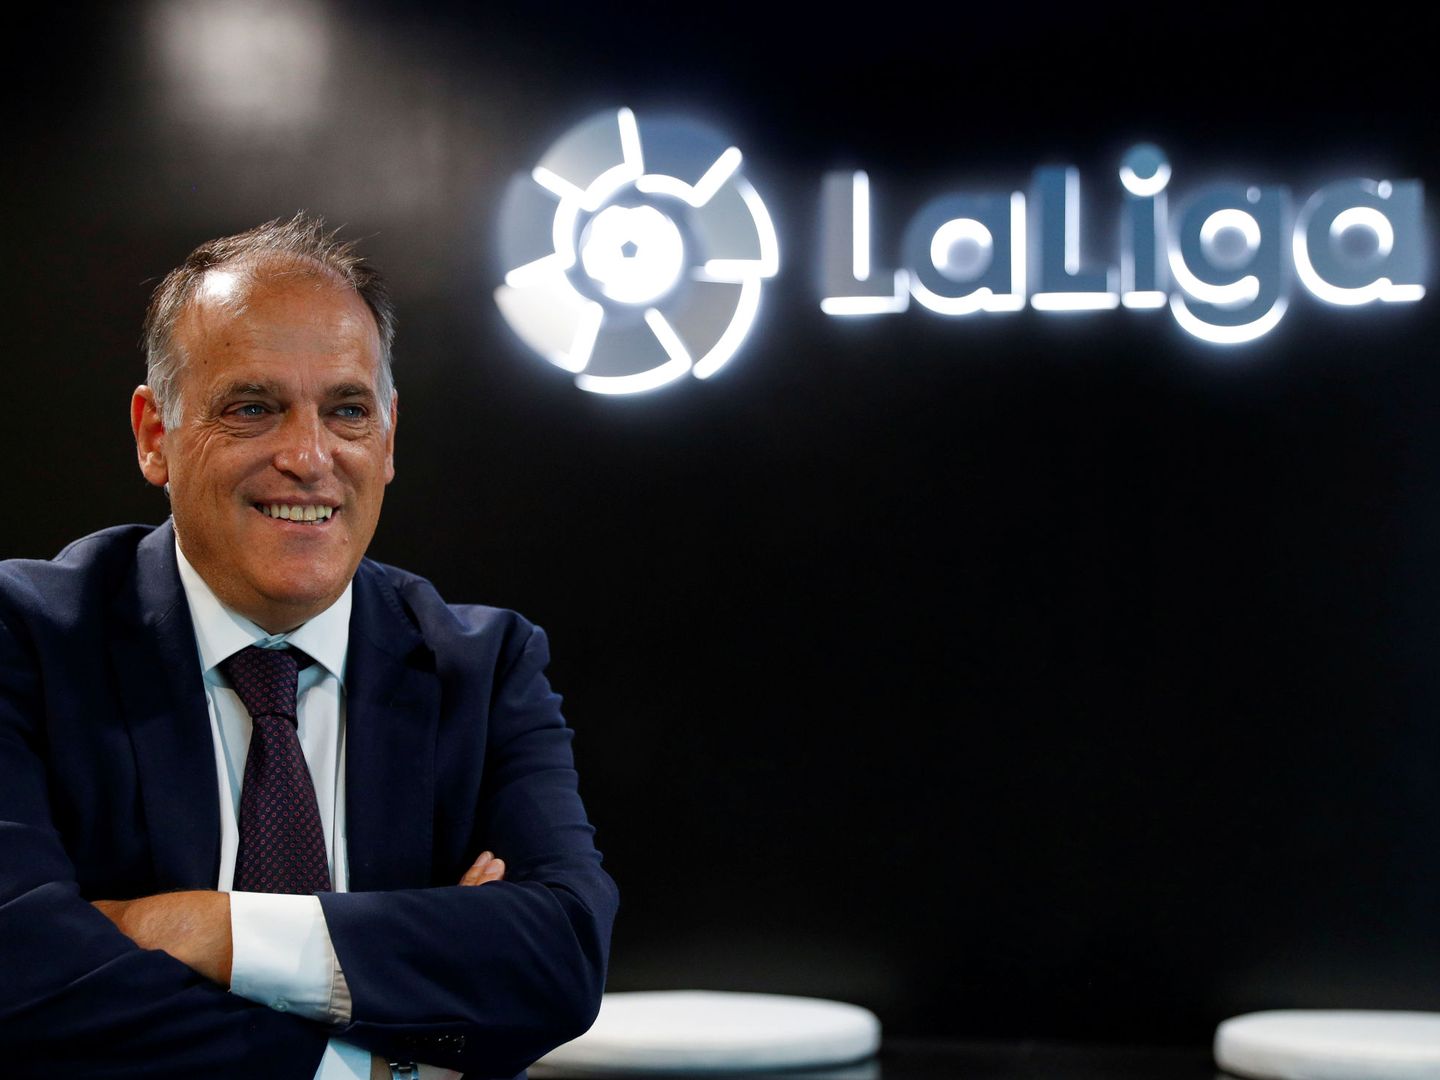 El presidente de LaLiga, en un acto promocional. (Reuters)